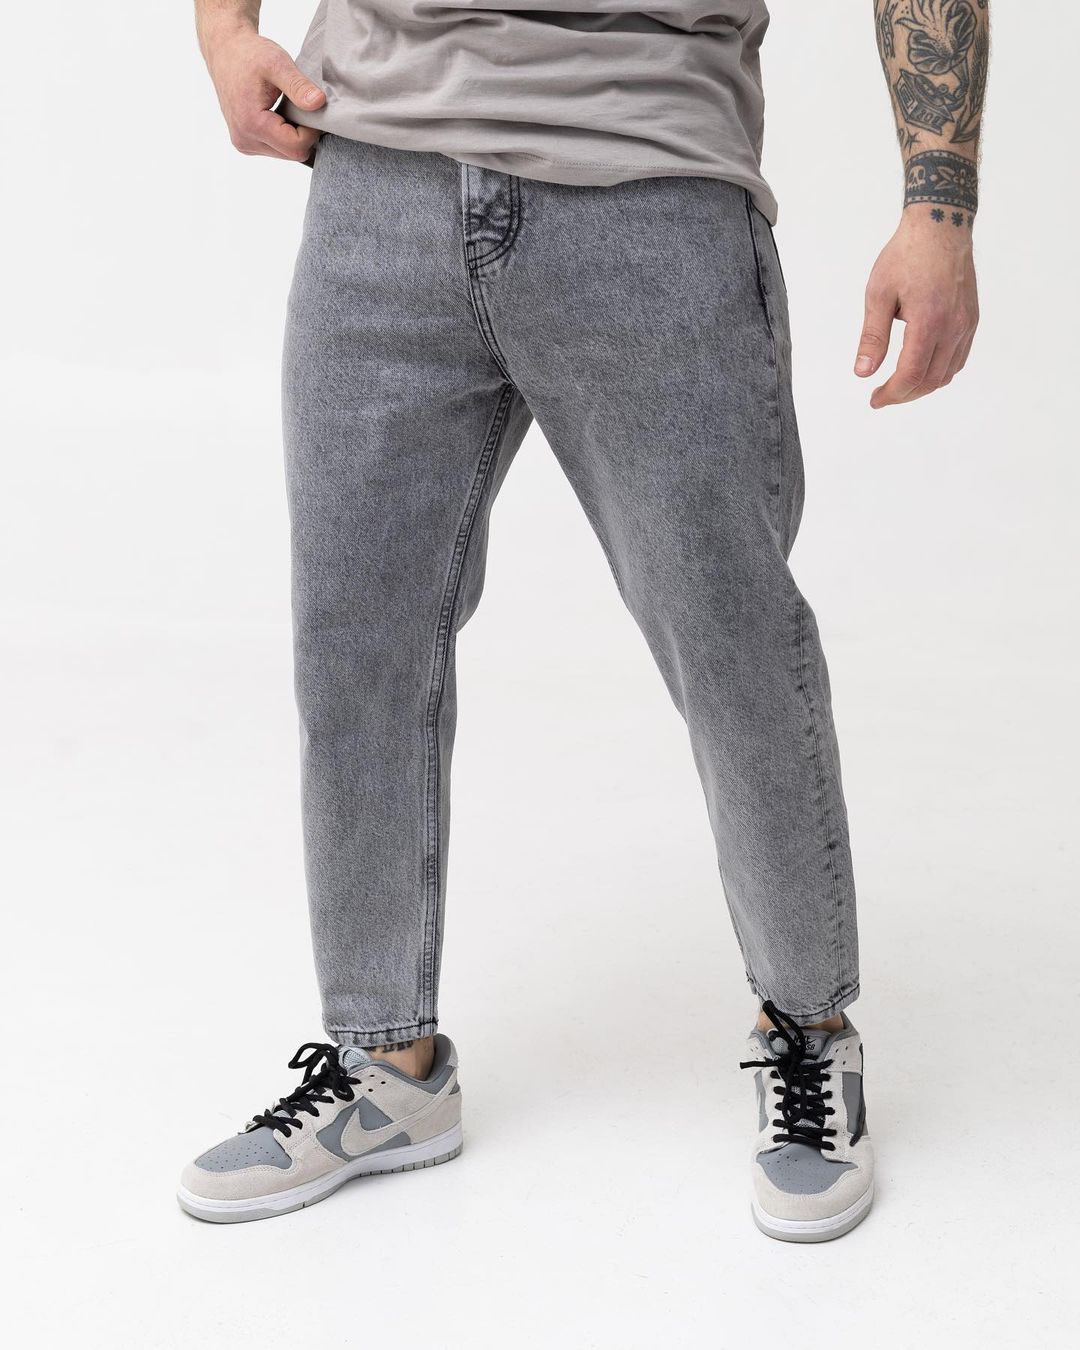 Мужские серые джинсы BEZET базовые бойфренды - Фото 1